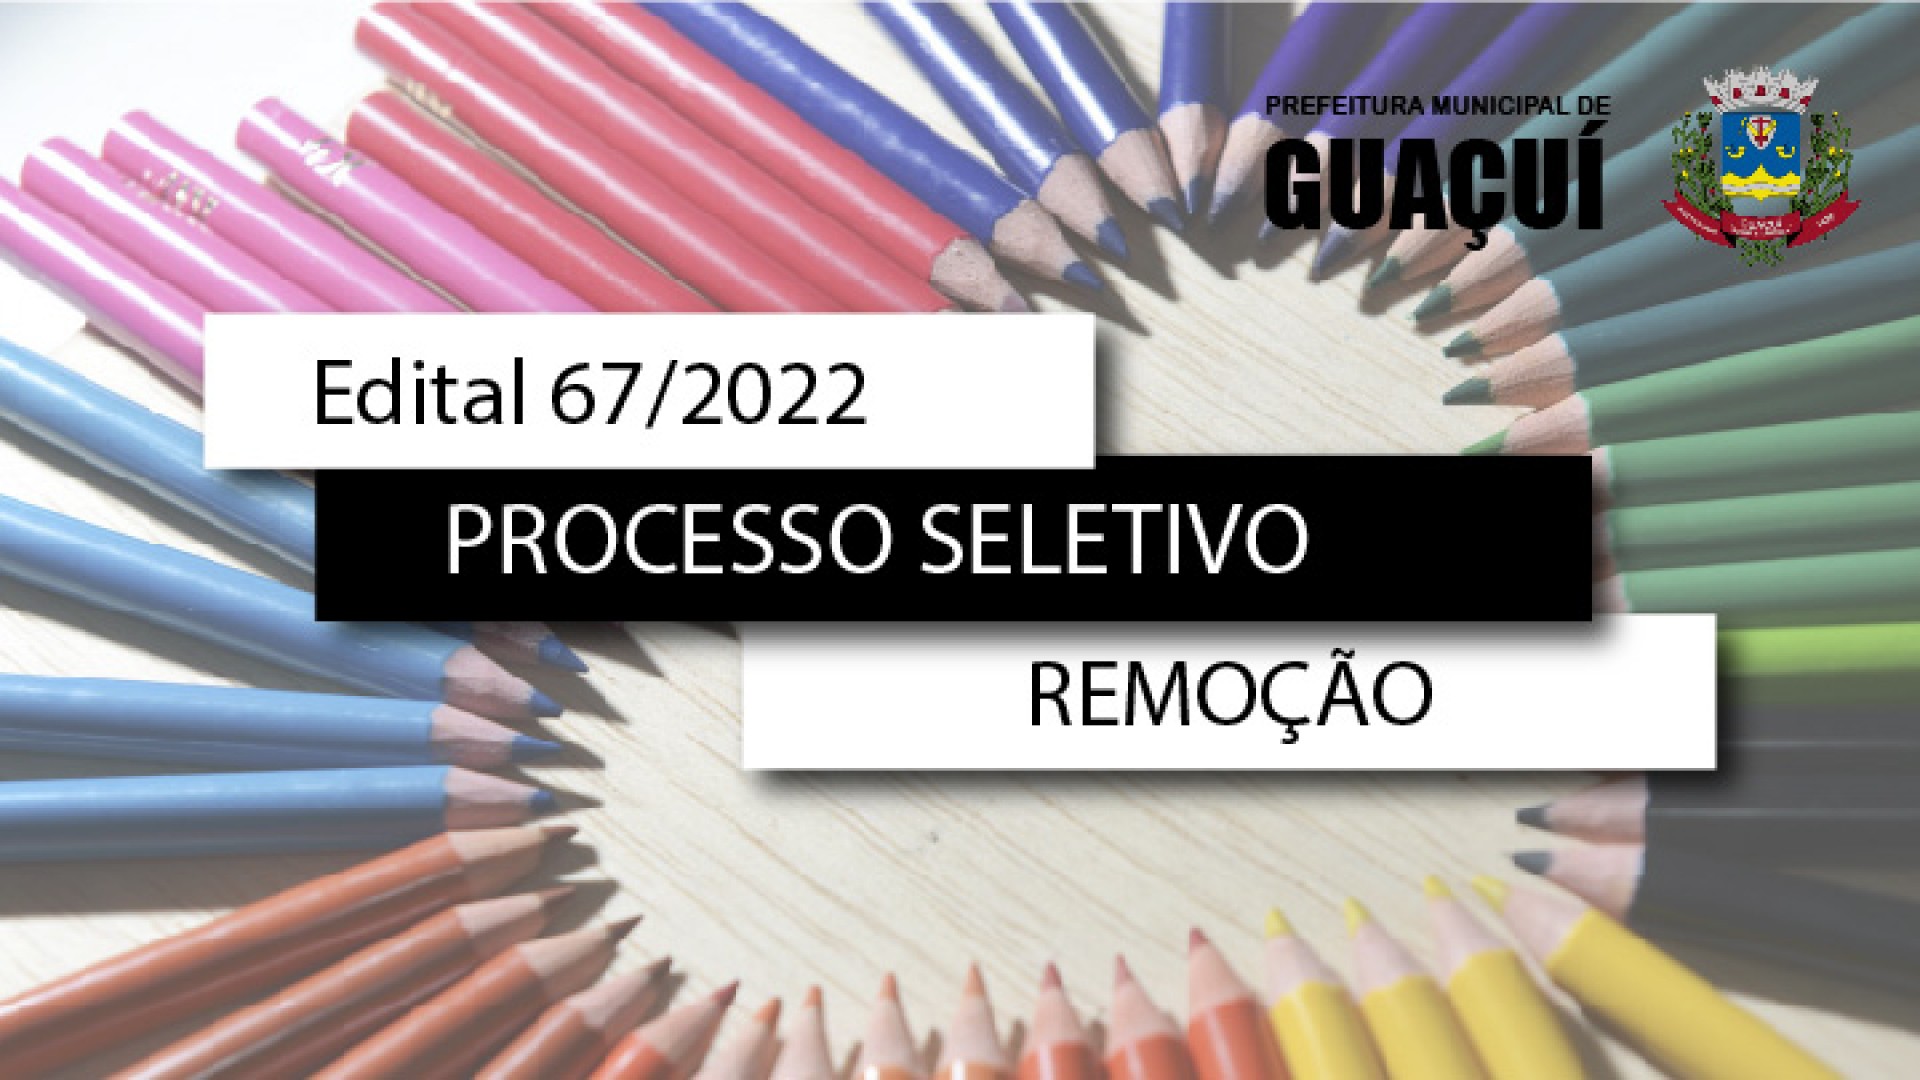 EDITAL EDUCAÇÃO Nº 067/2022 - REMOÇÃO